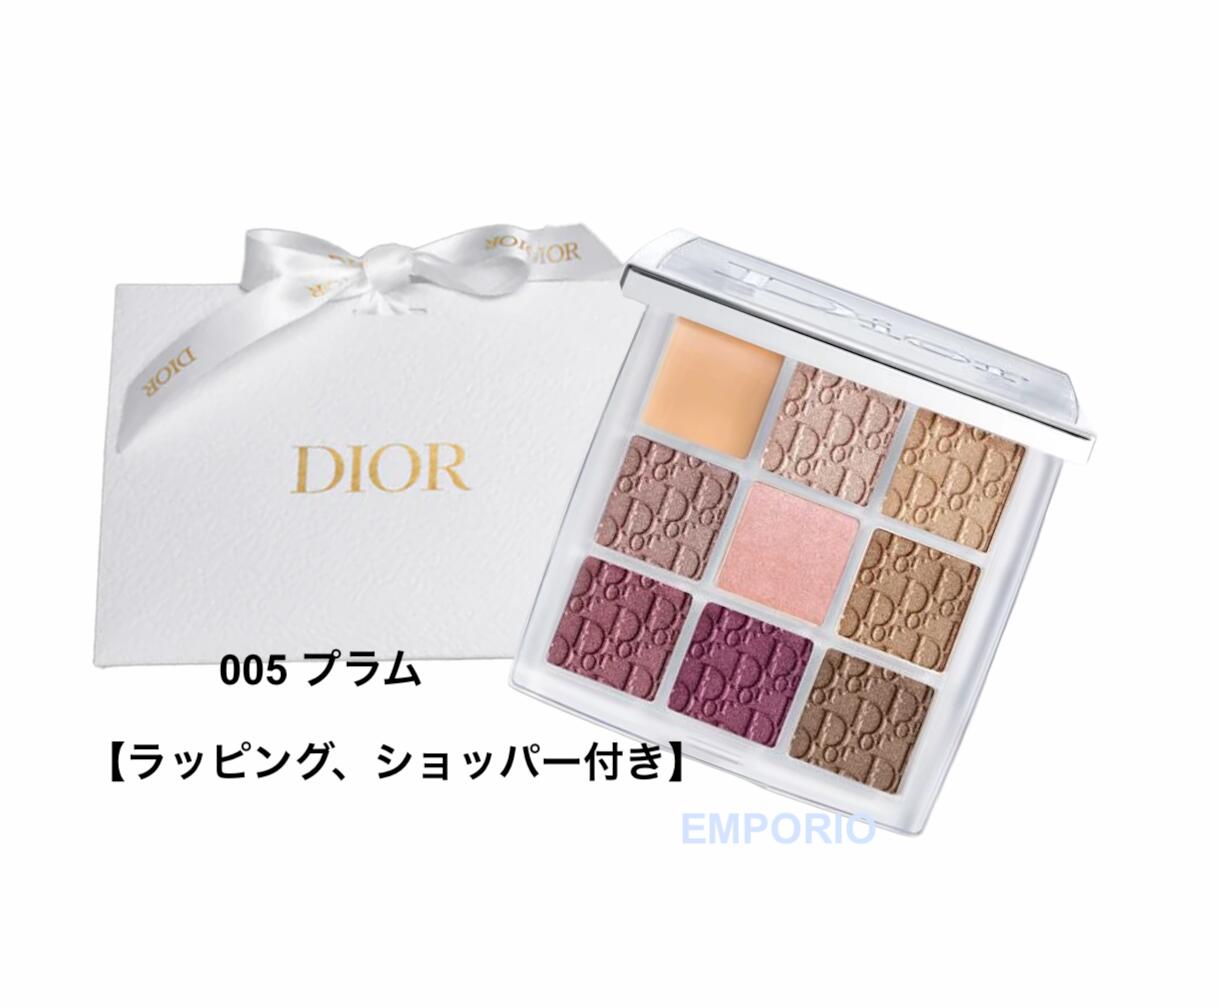 新企画の-Dior デ•ィオール バックステージ• アイ パレット 005 プラム